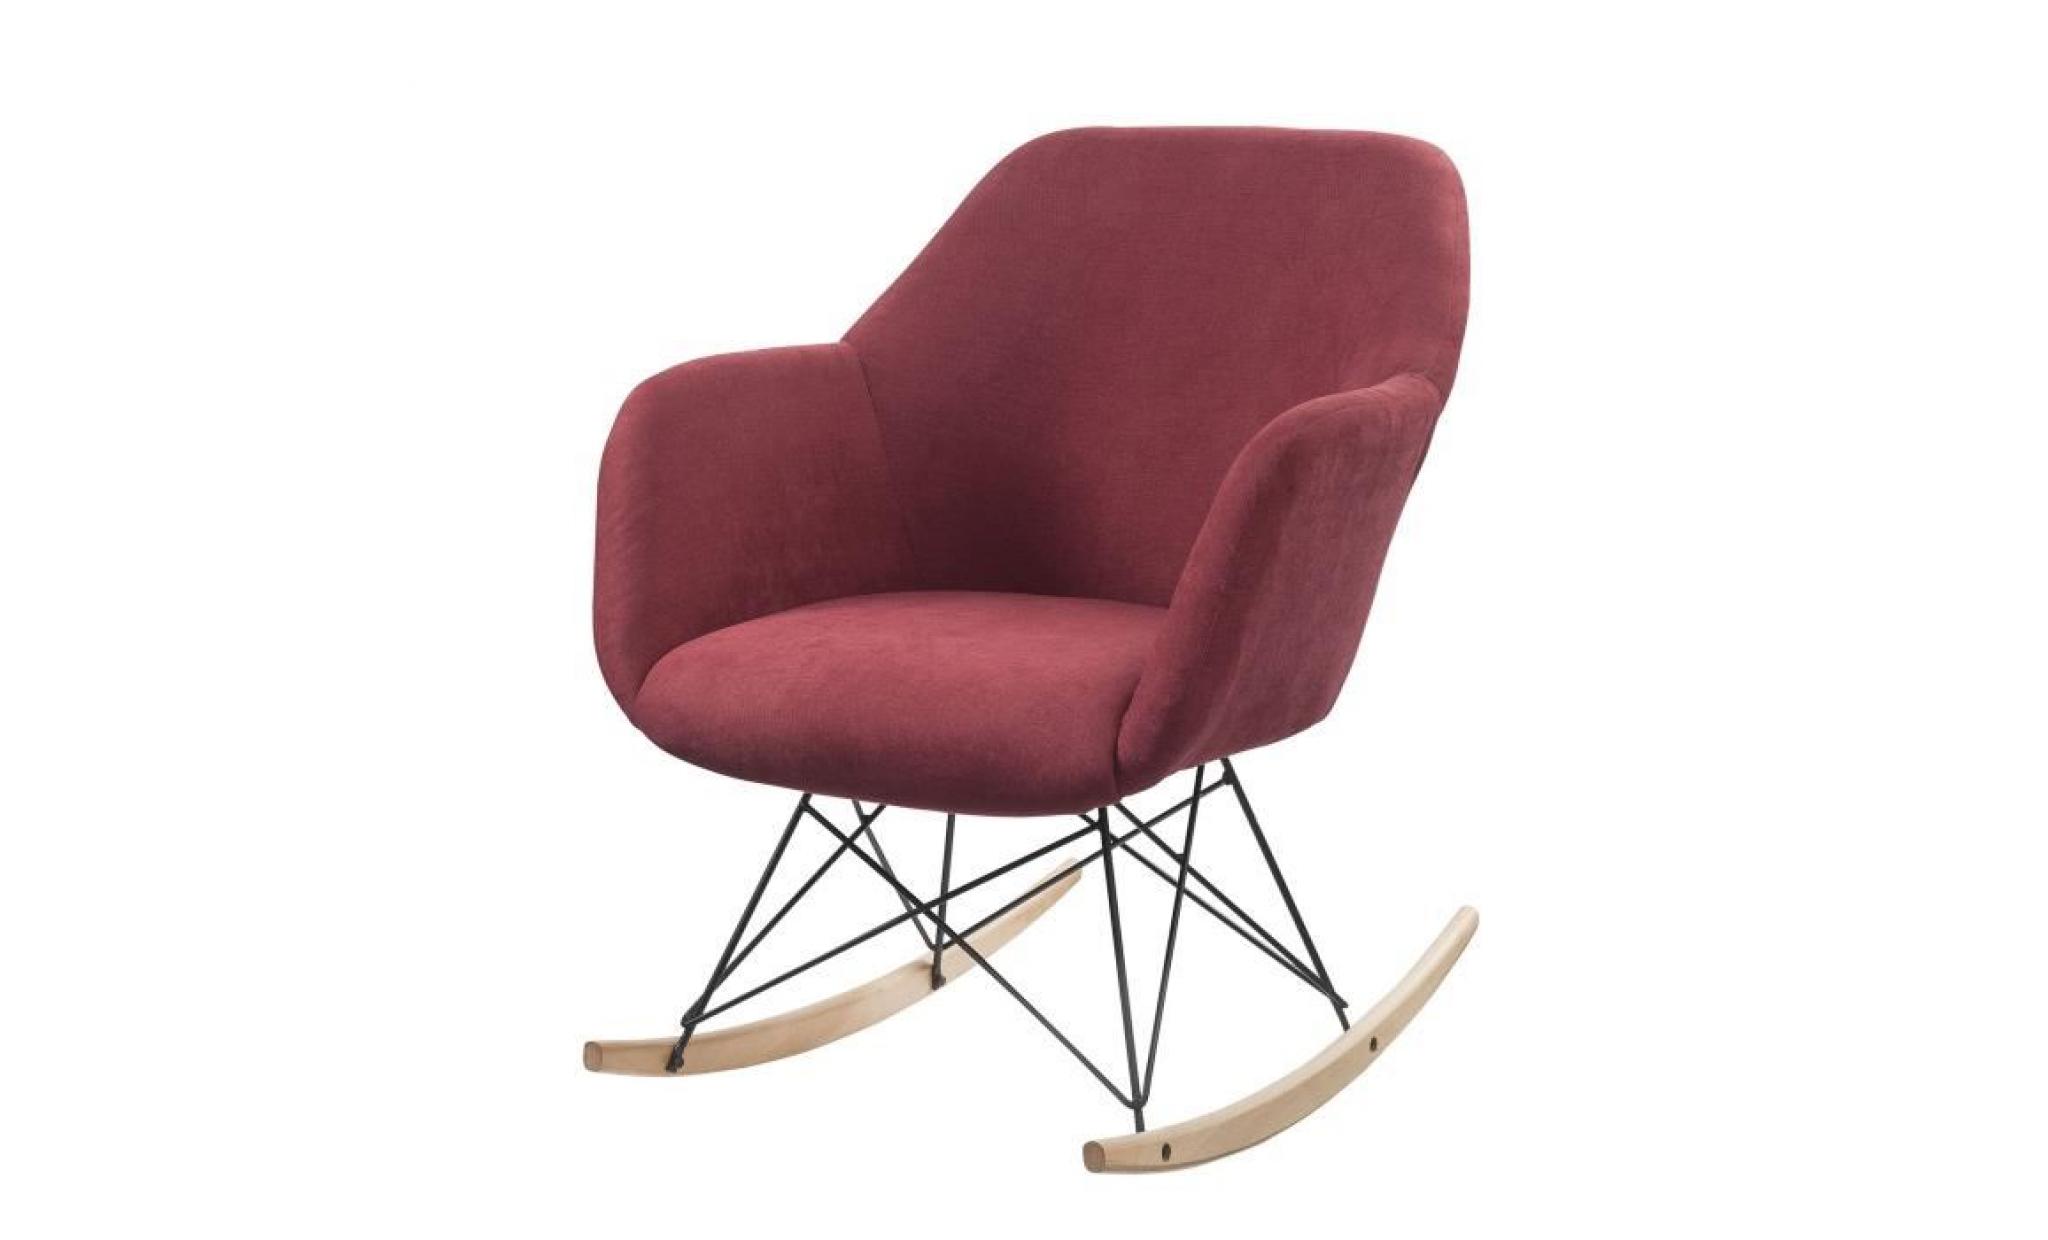 mensh fauteuil à bascule rocking chair   tissu lie de vin   pieds bois massif   scandinave   l 67 x p 75 cm